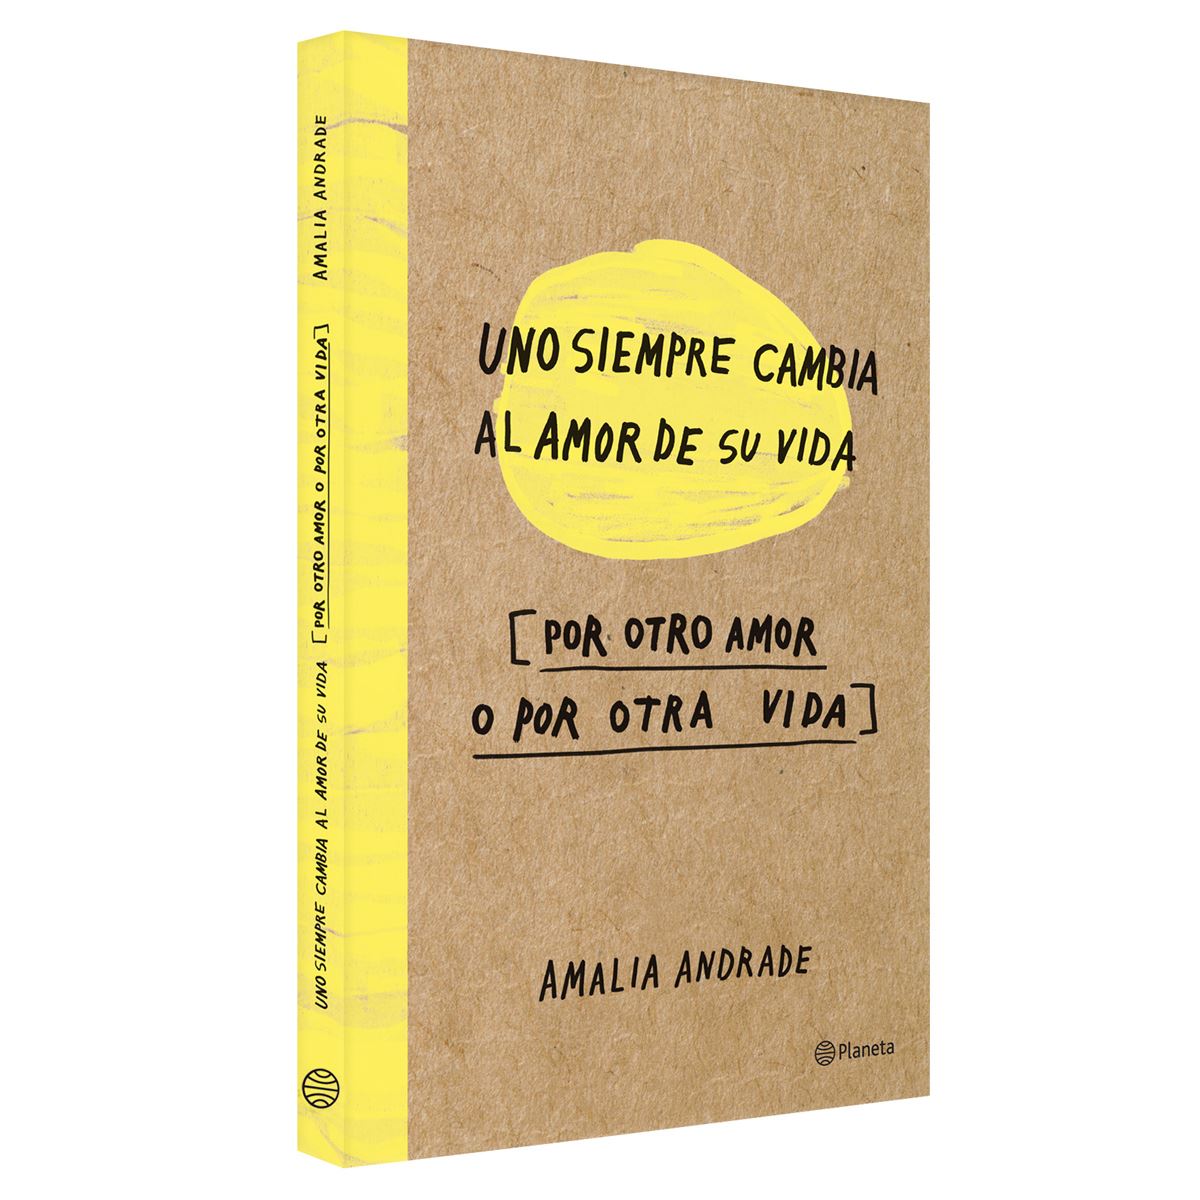 LIBRO: Uno siempre cambia al amor de su vida, por otro amor o por otra vida  - Amalia Andrade - Jess&Books: Reseñas literarias